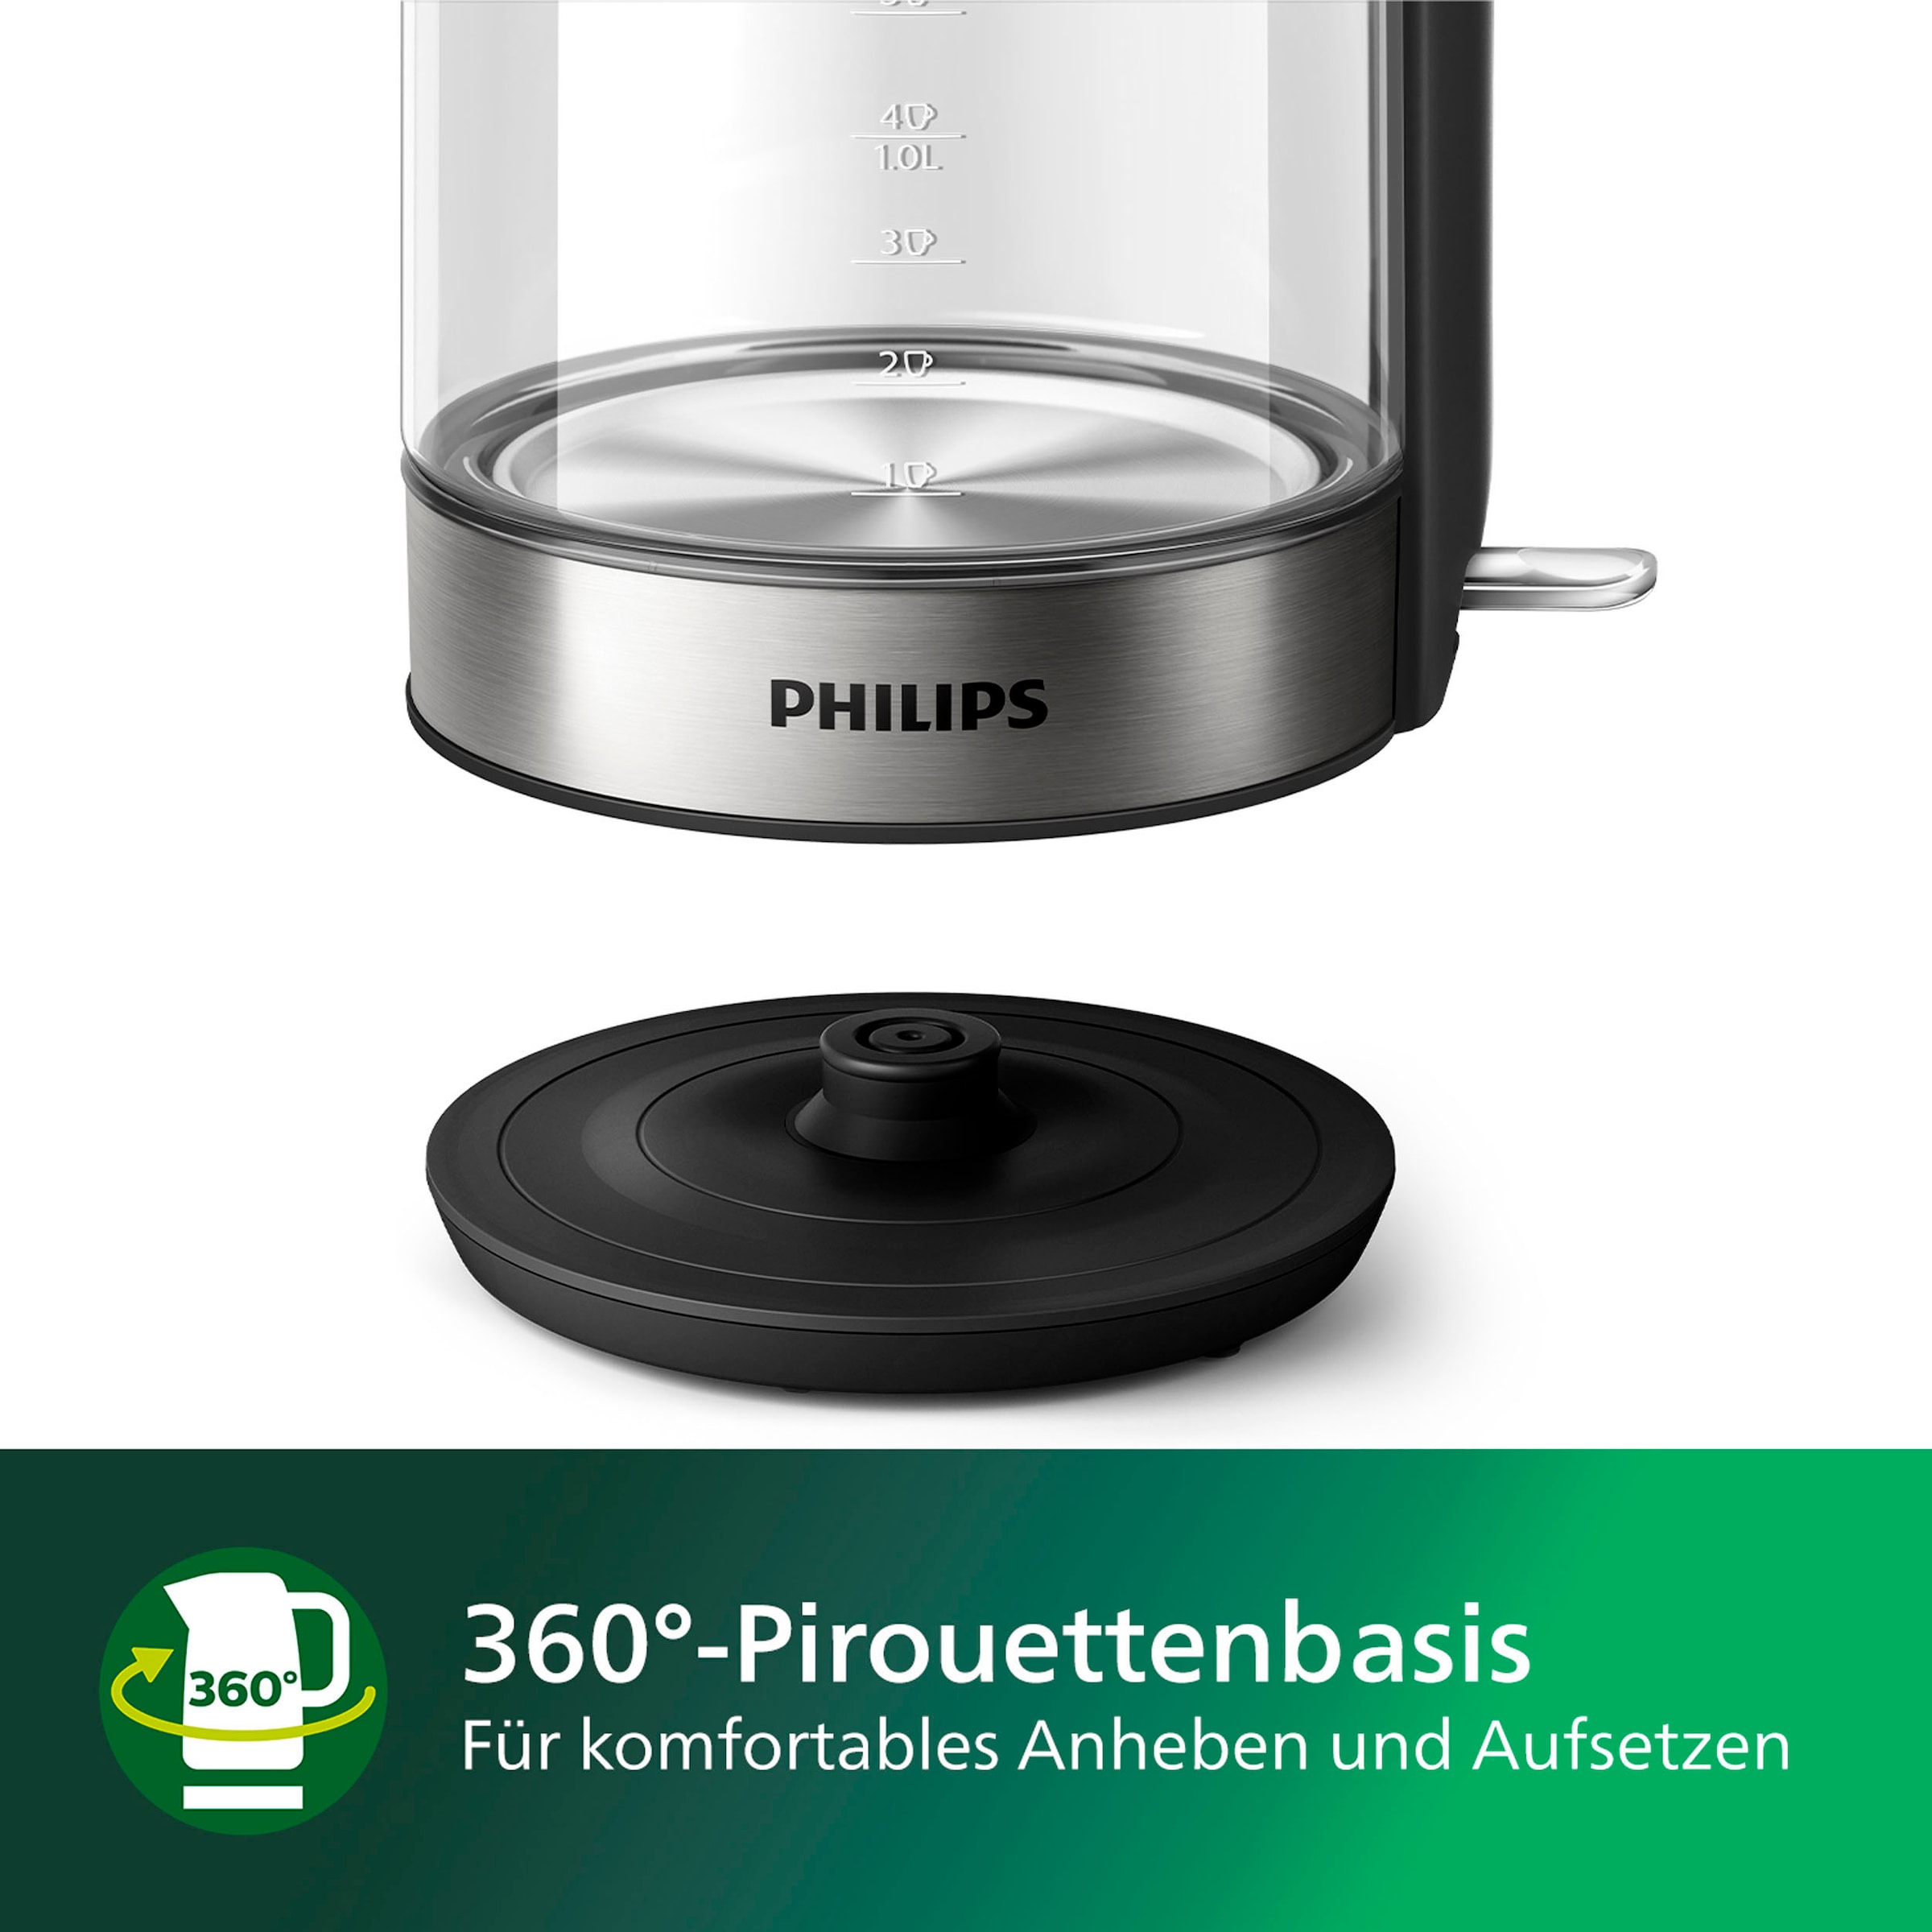 Philips 1,7 HD9339/80«, W »Series Wasserkocher l, 2200 5000